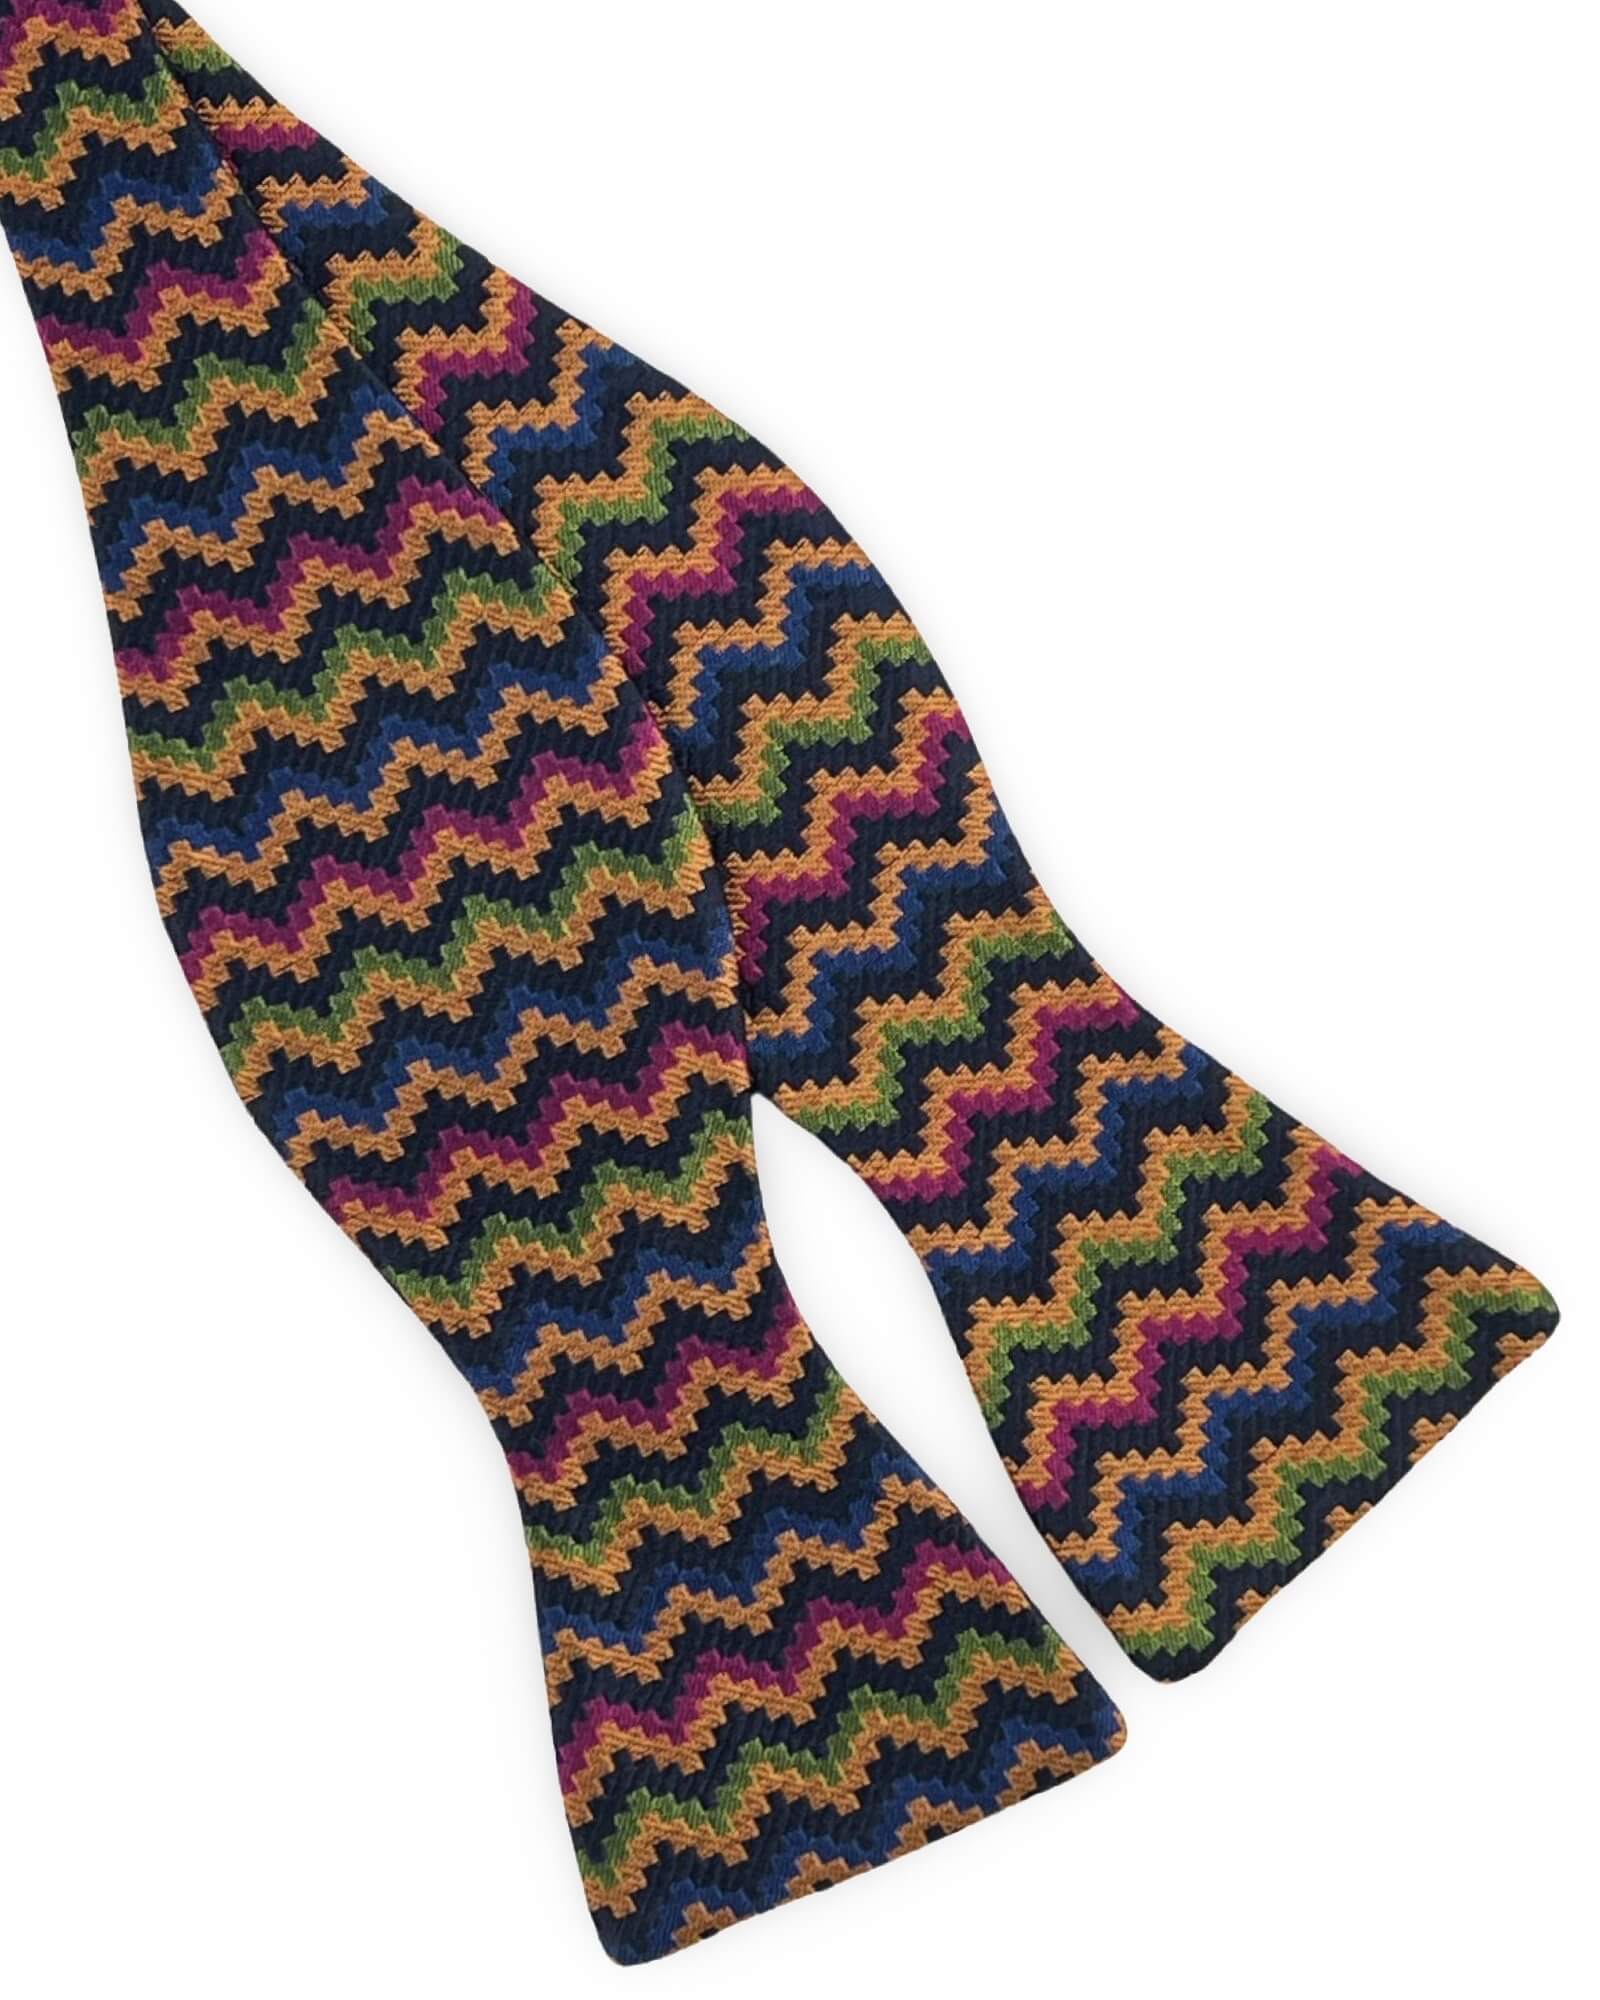 DÉCLIC Empoli Pattern TYO Bow Tie - Assorted